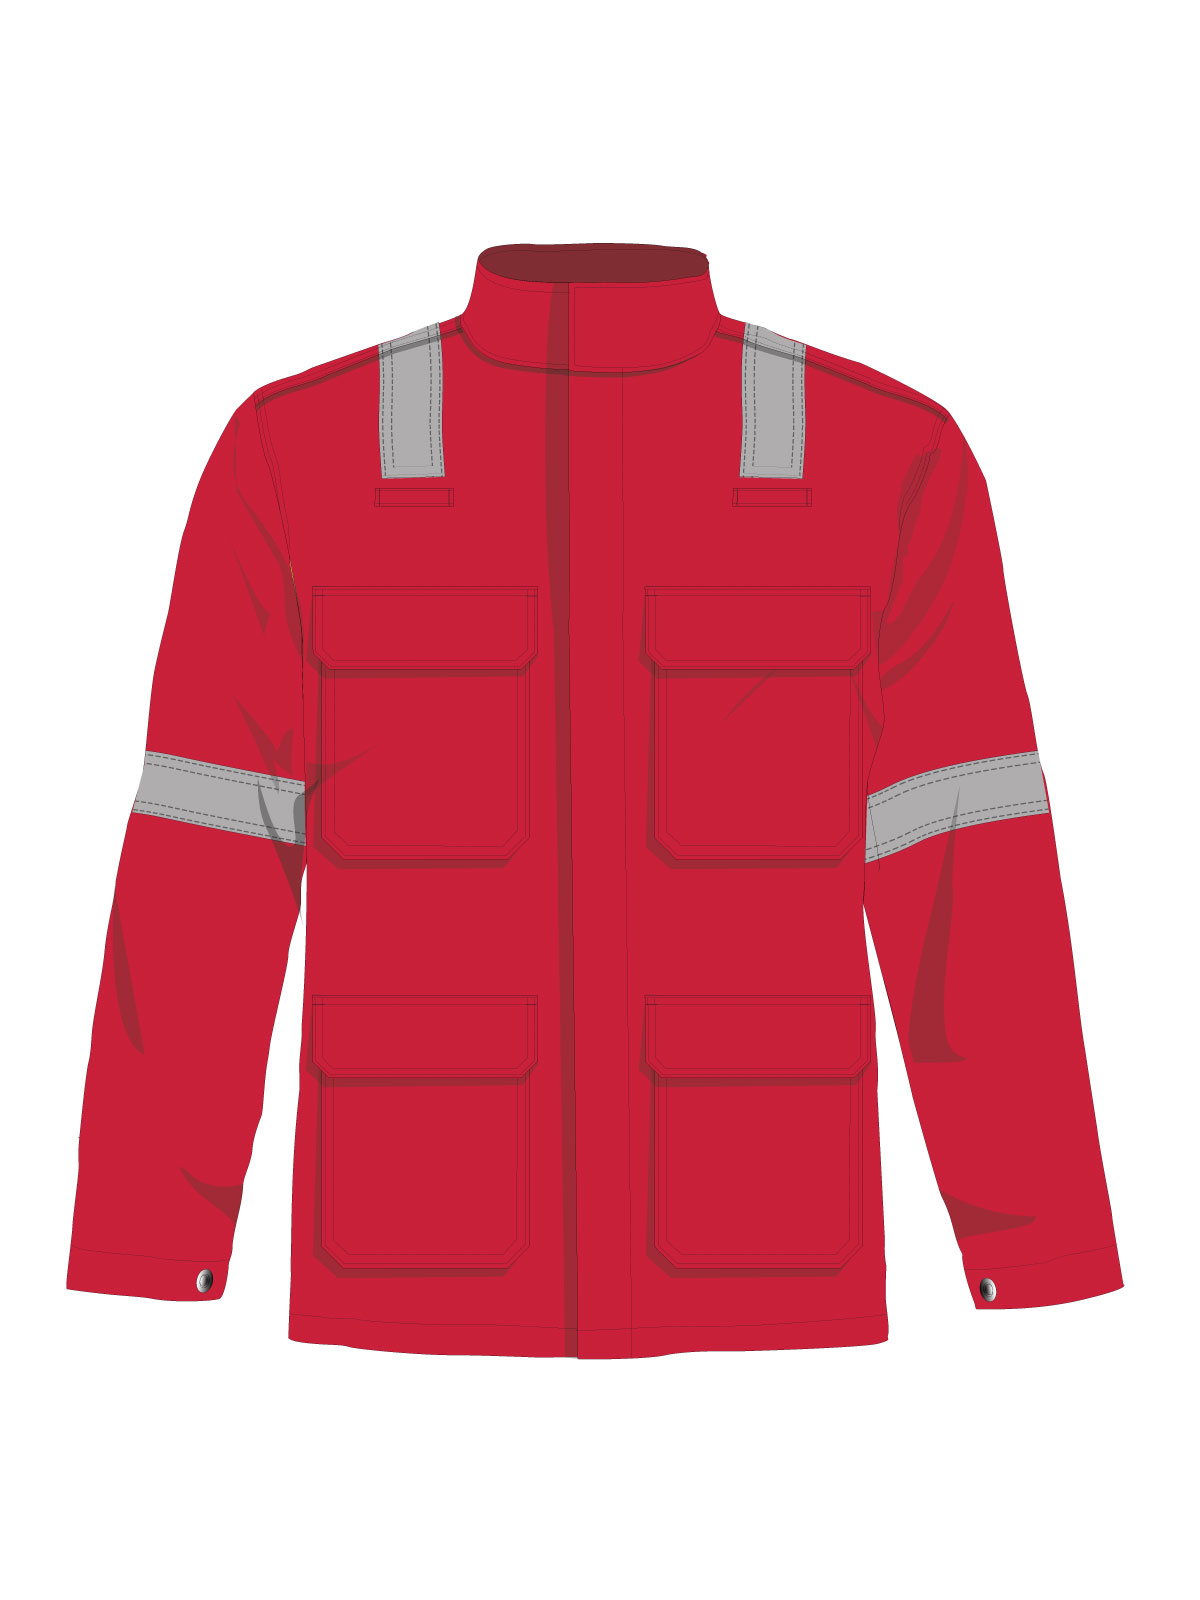 Value Flame Retardant Jacket